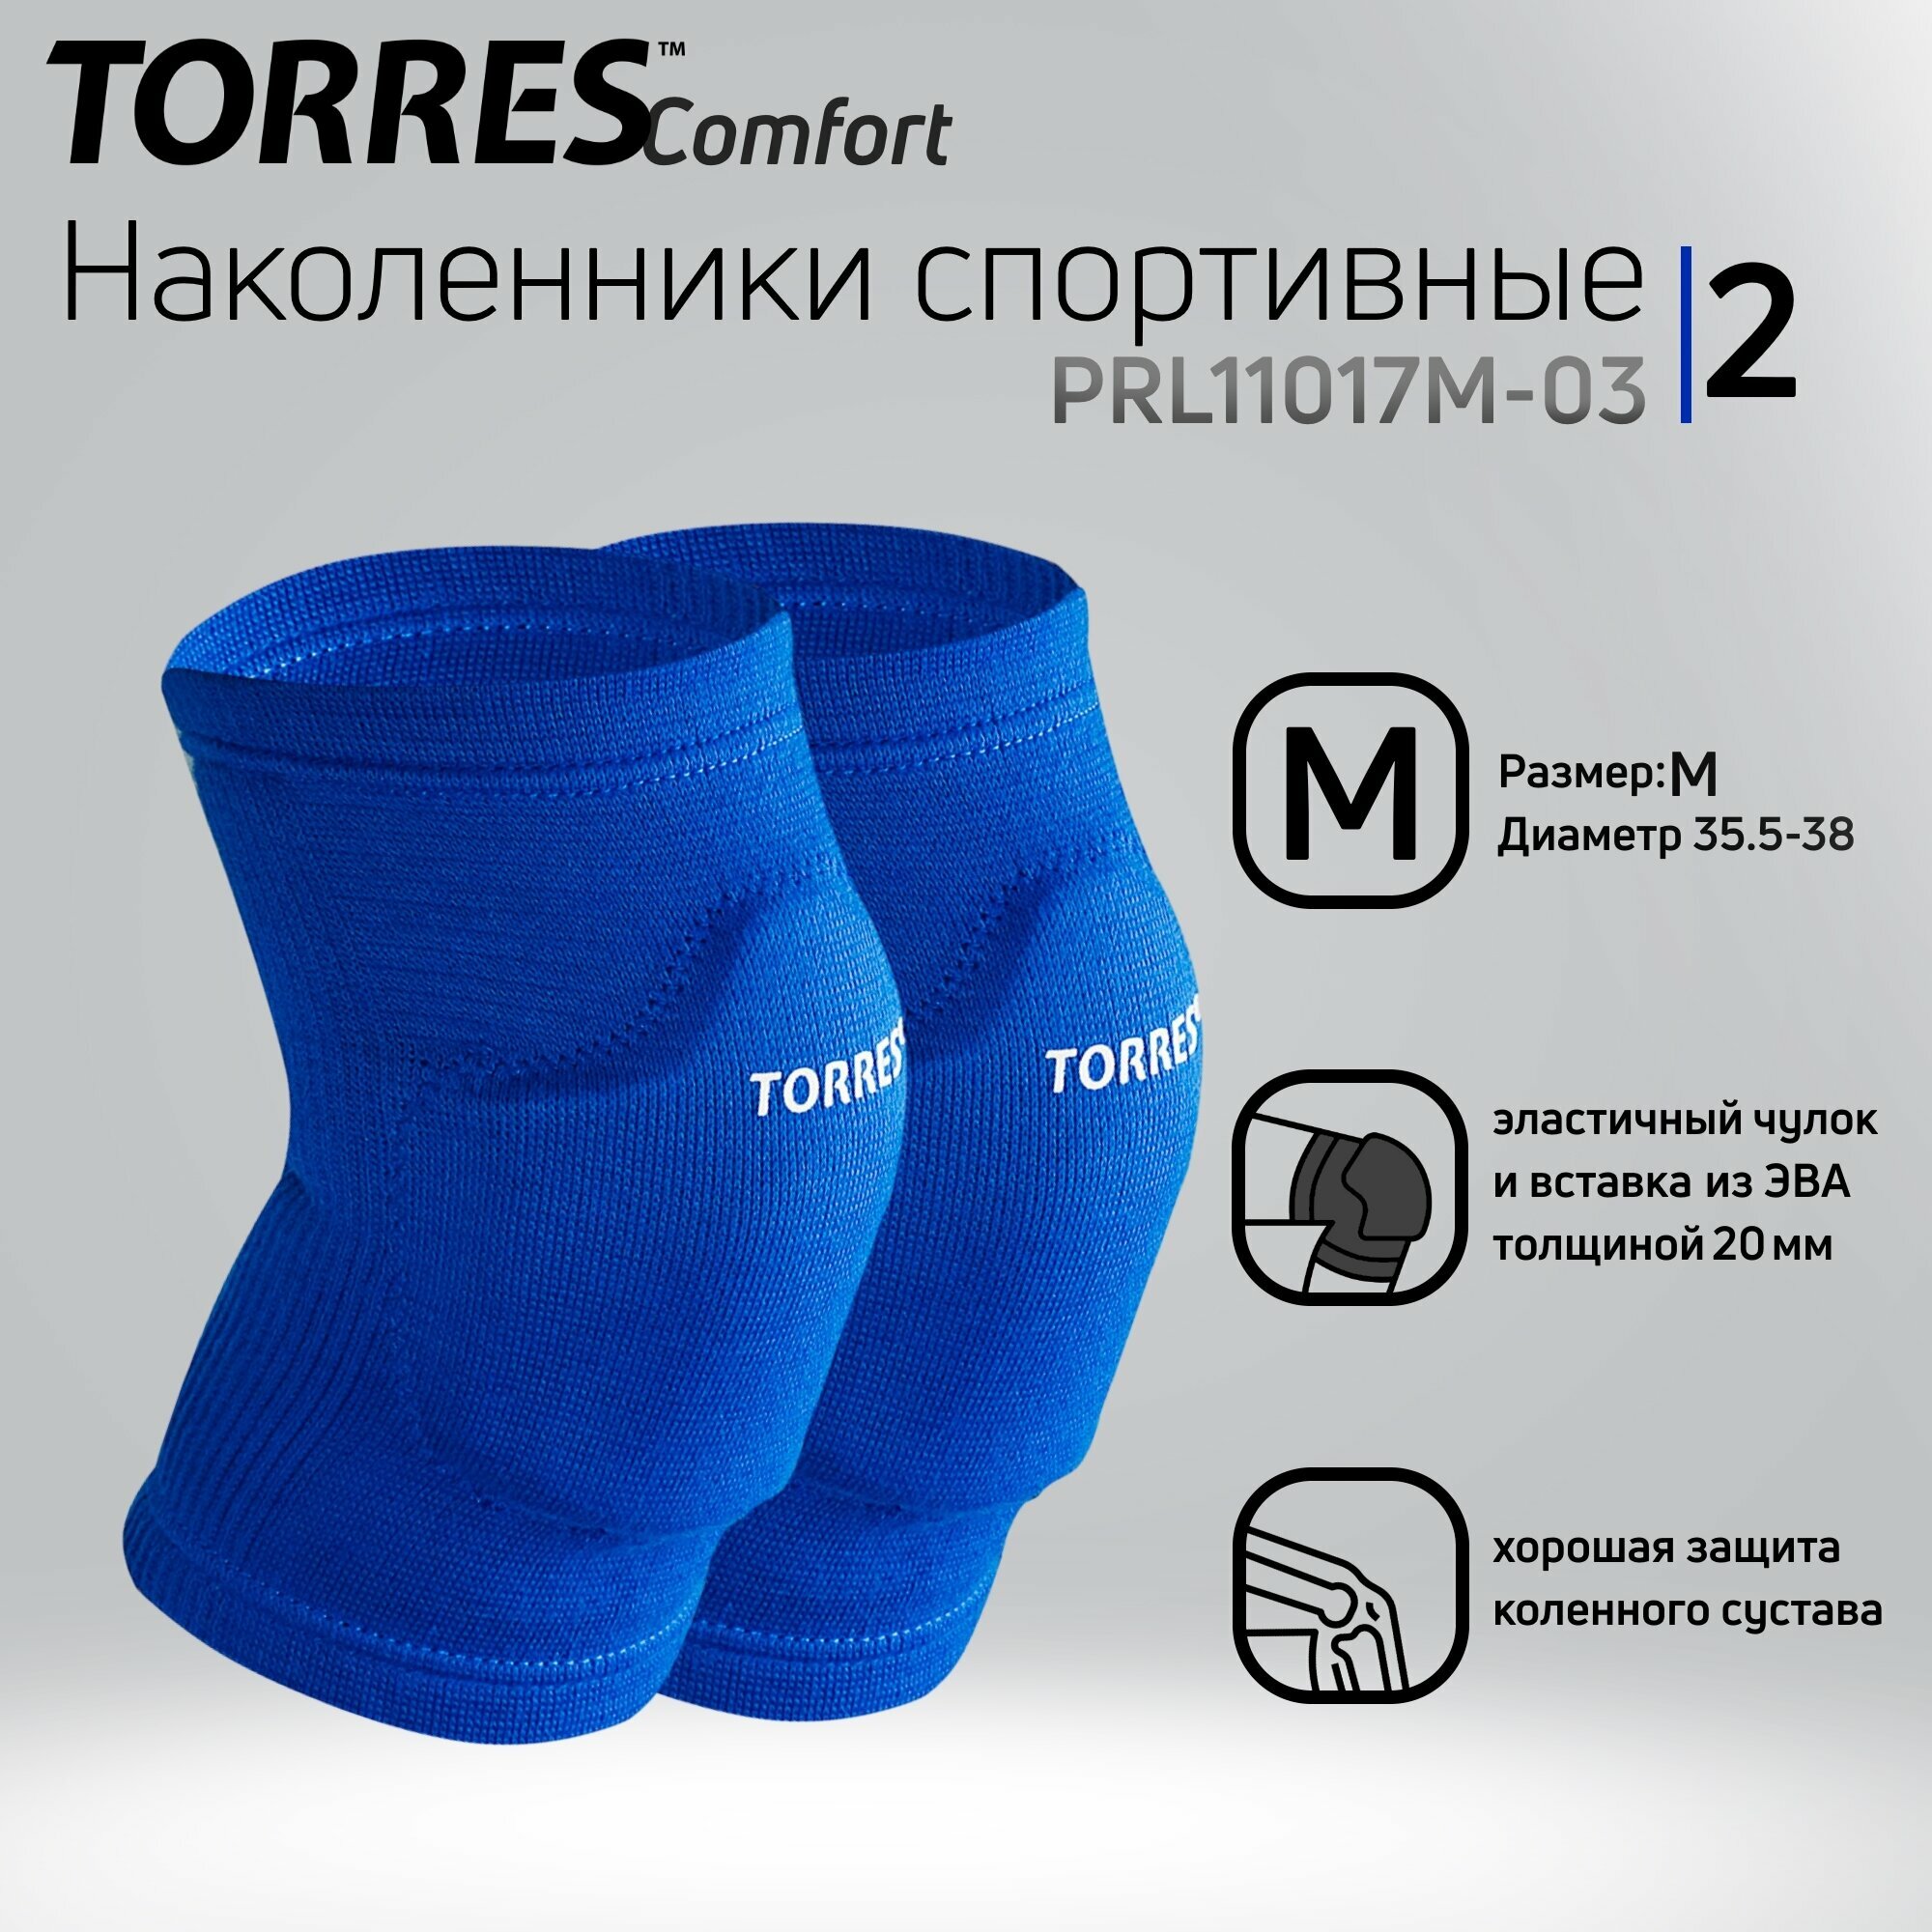   Torres Comfort .PRL11017M-03 . M